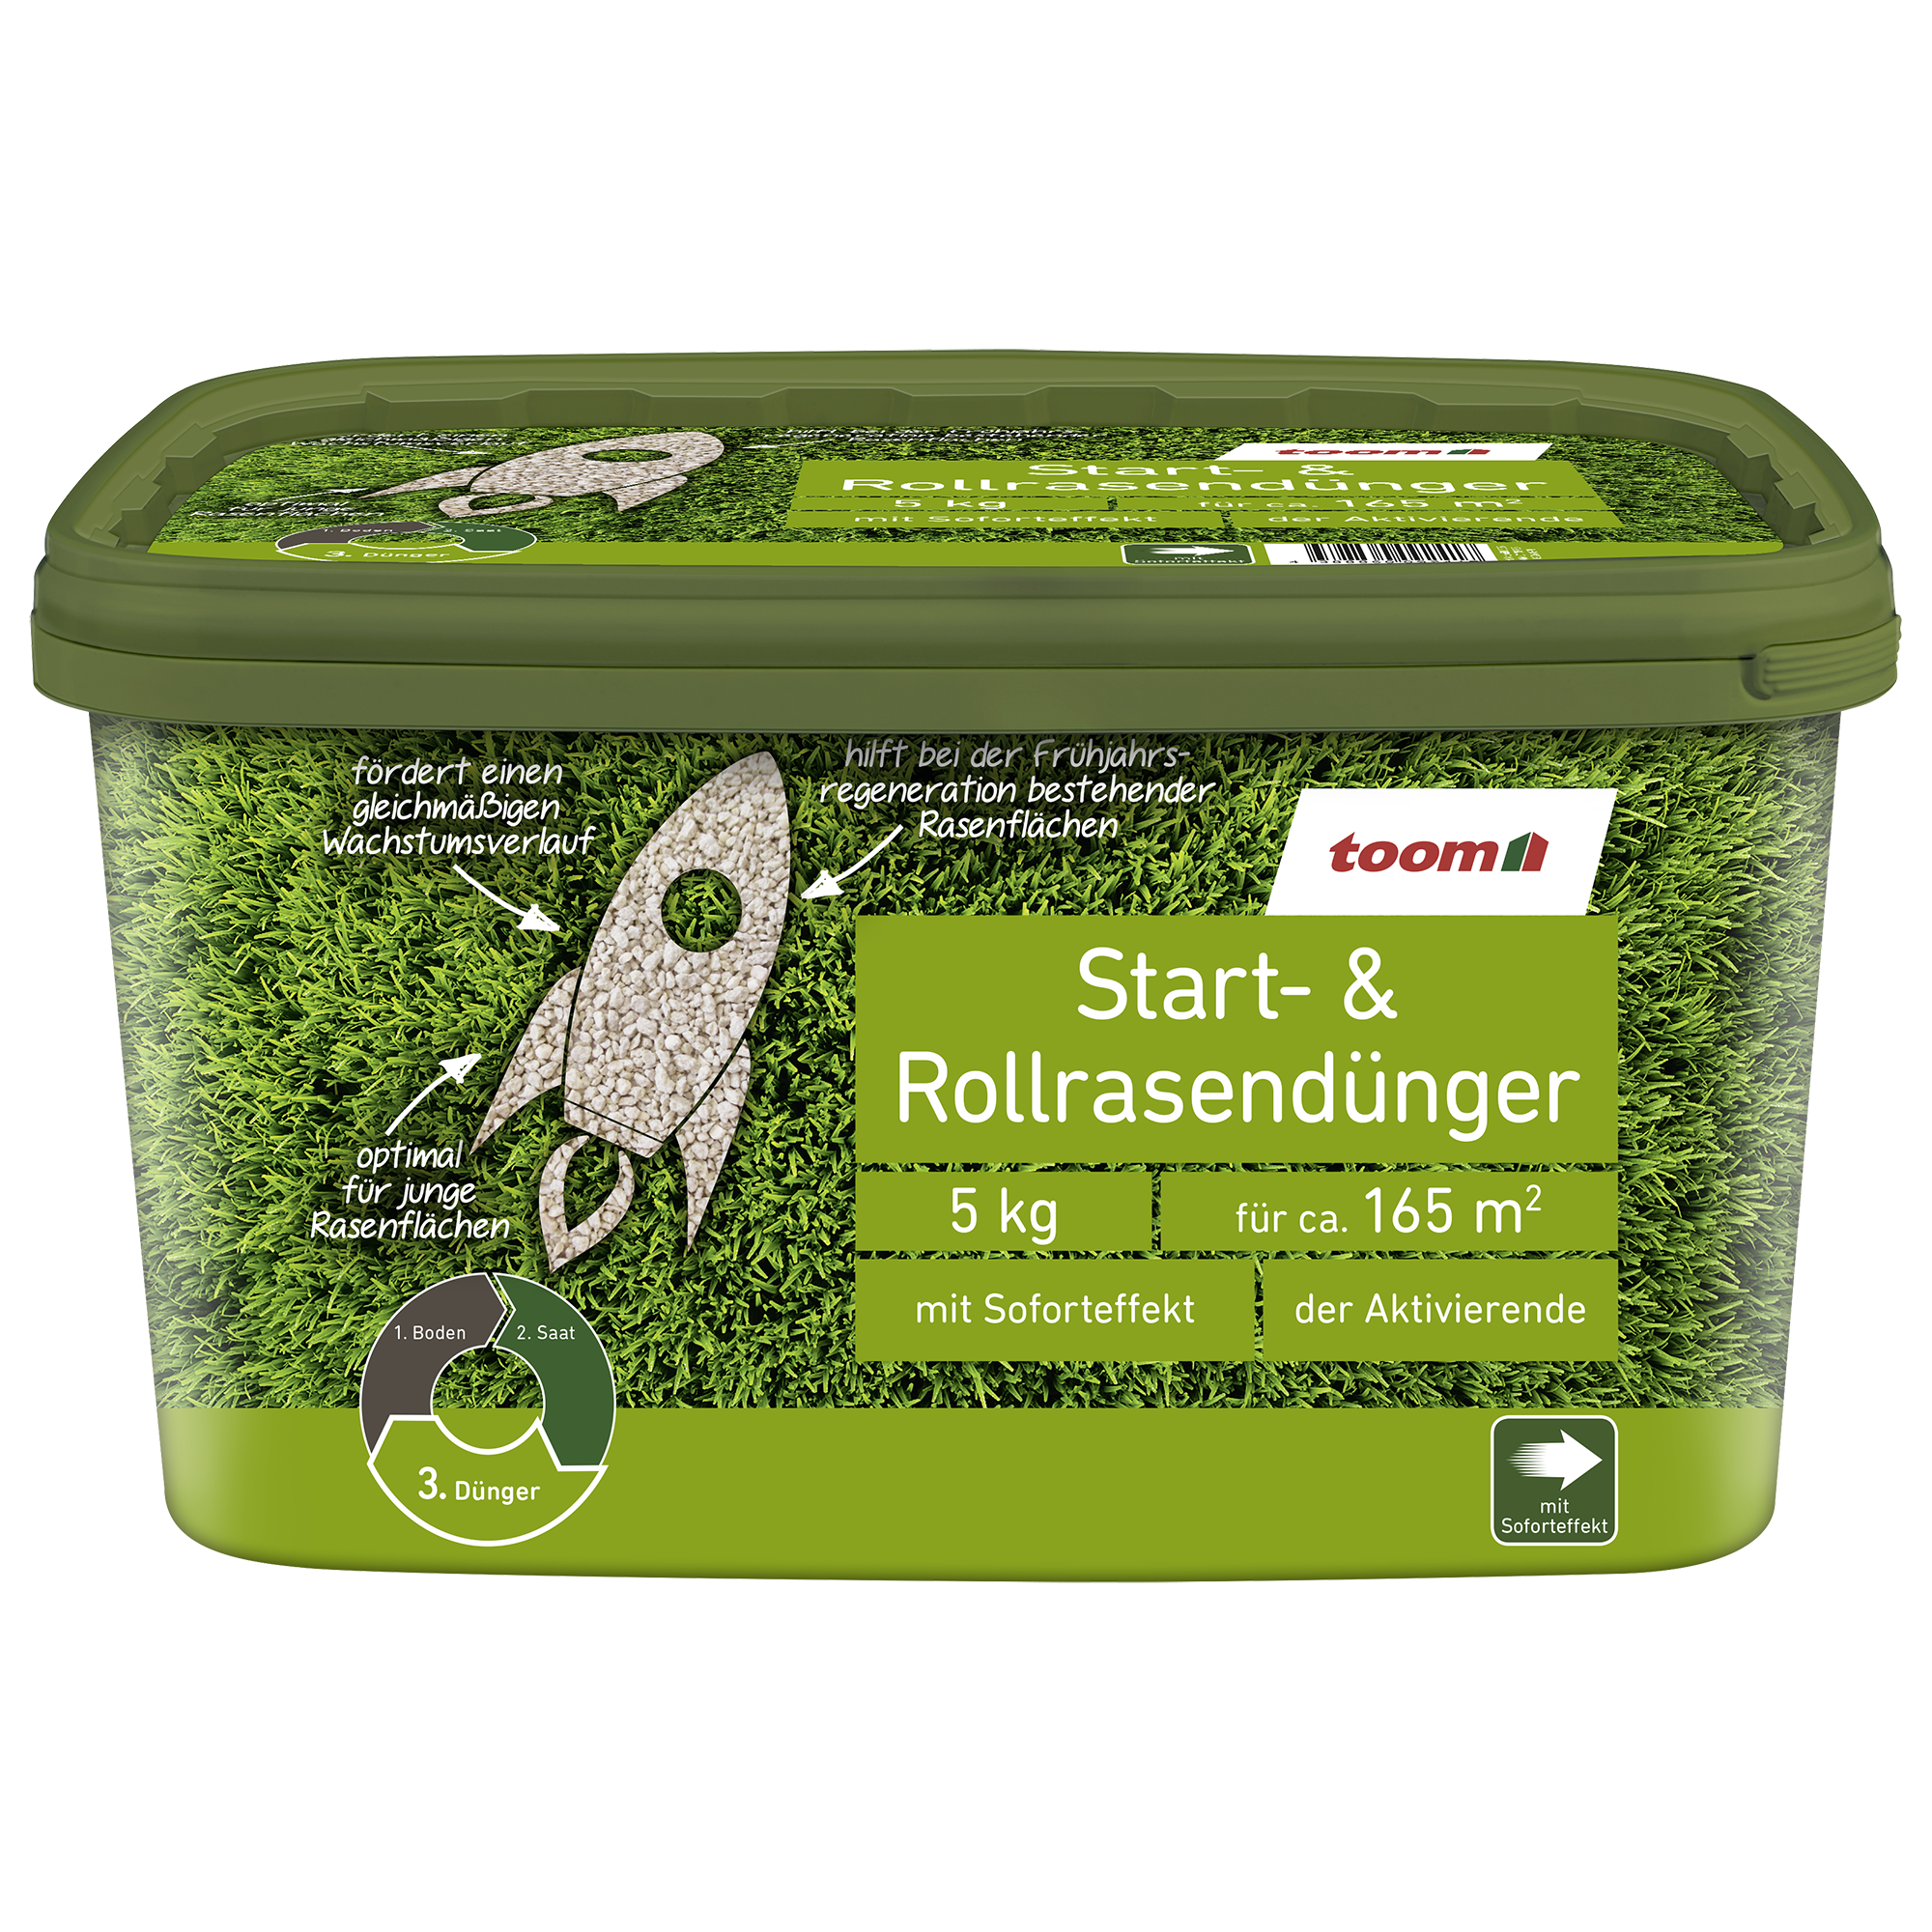 Start- und Rollrasen-Dünger 5 kg + product picture